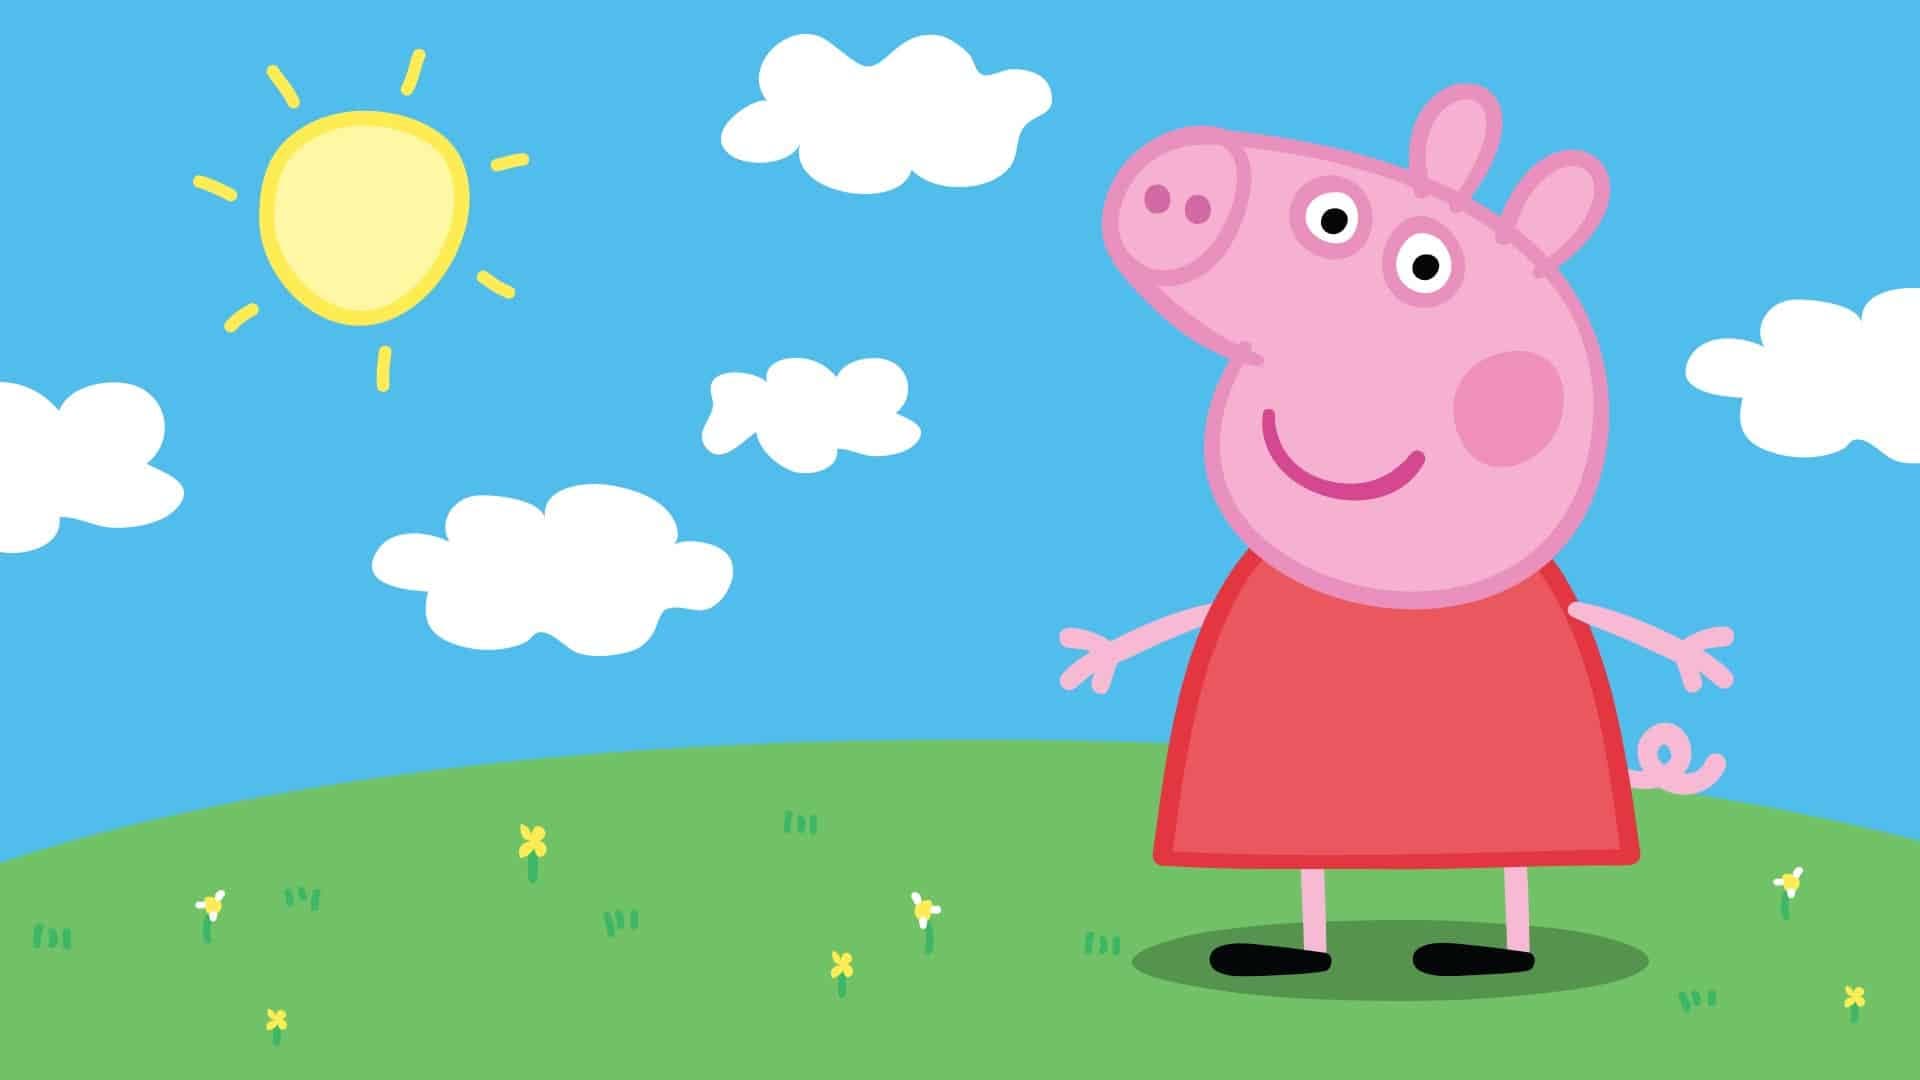 La última aventura de Peppa Pig comienza hoy mismo con el lanzamiento de Peppa  Pig: World Adventures